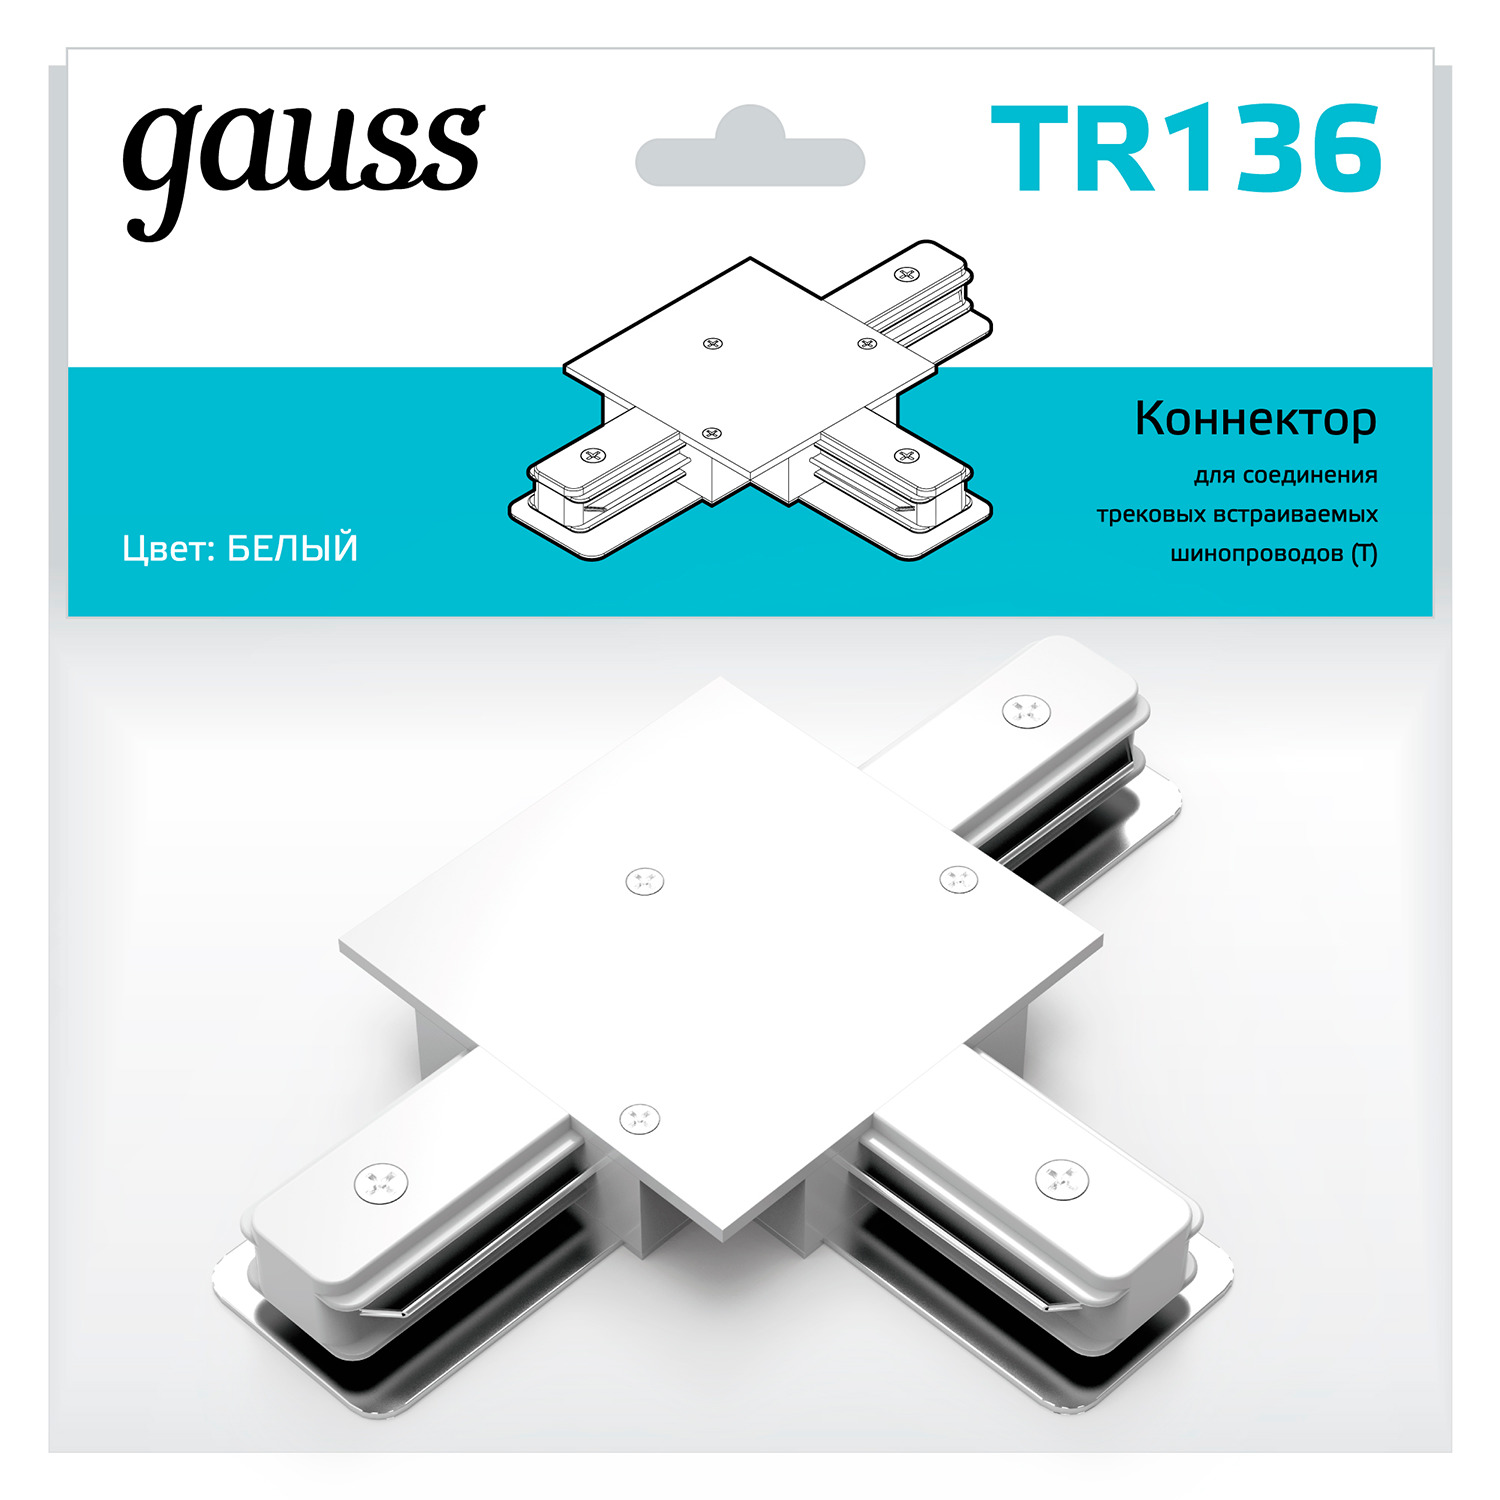 Коннектор Gauss для встраиваемых трековых шинопроводов (T) белый коннектор gauss для встраиваемых трековых шинопроводов прямой i белый